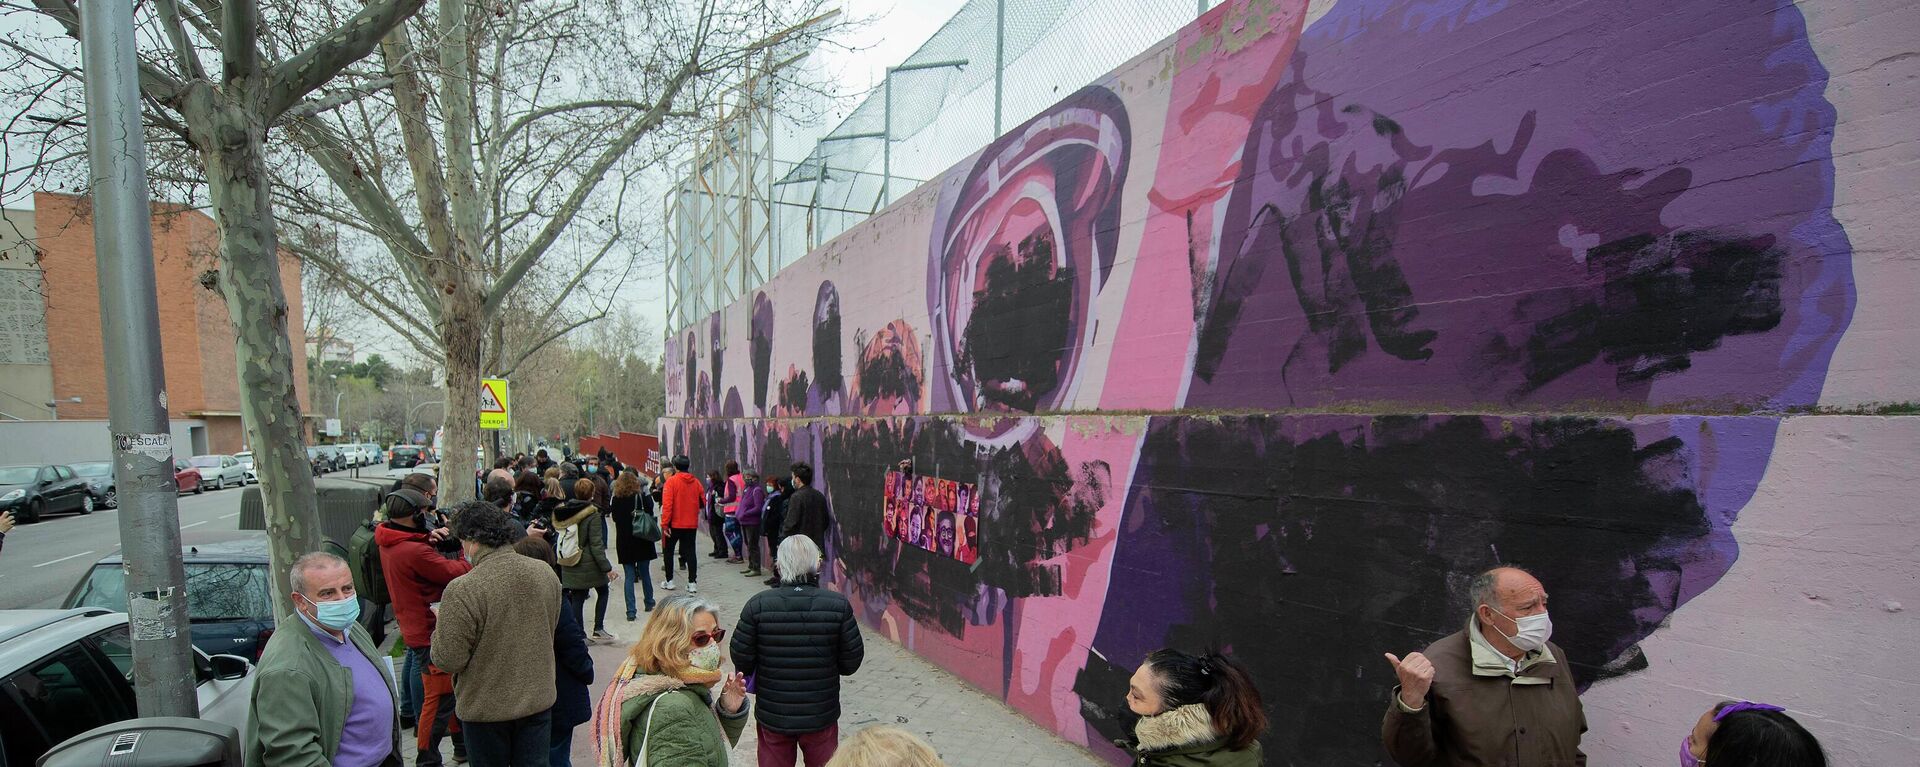 Transeúntes observan el mural feminista de Ciudad Lineal que ha amanecido este 8M, Día Internacional de las Mujeres, completamente vandalizado. Madrid, 8 de marzo de 2021. - Sputnik Mundo, 1920, 08.03.2021